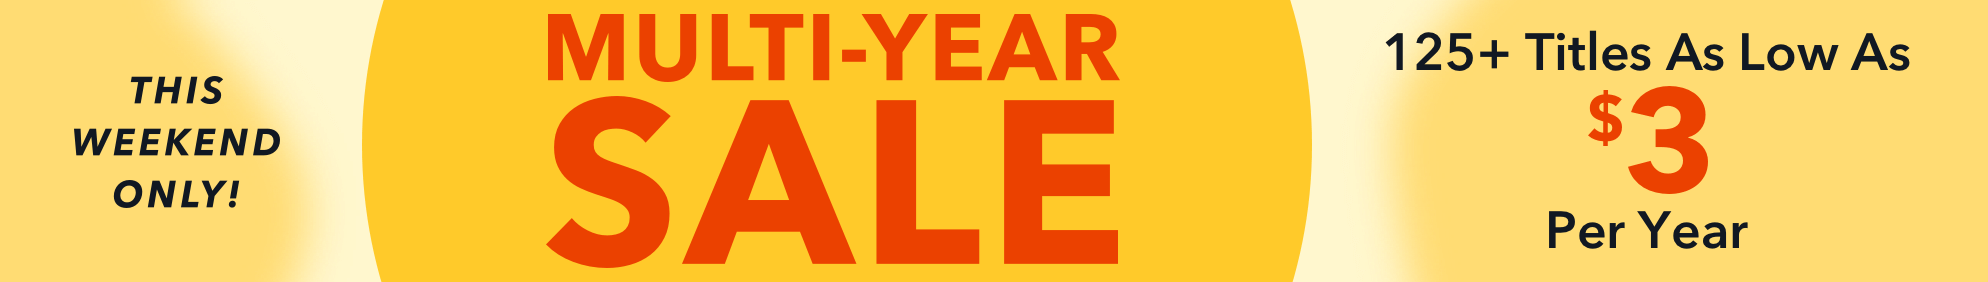 Multi-Year Sale- Jun 18